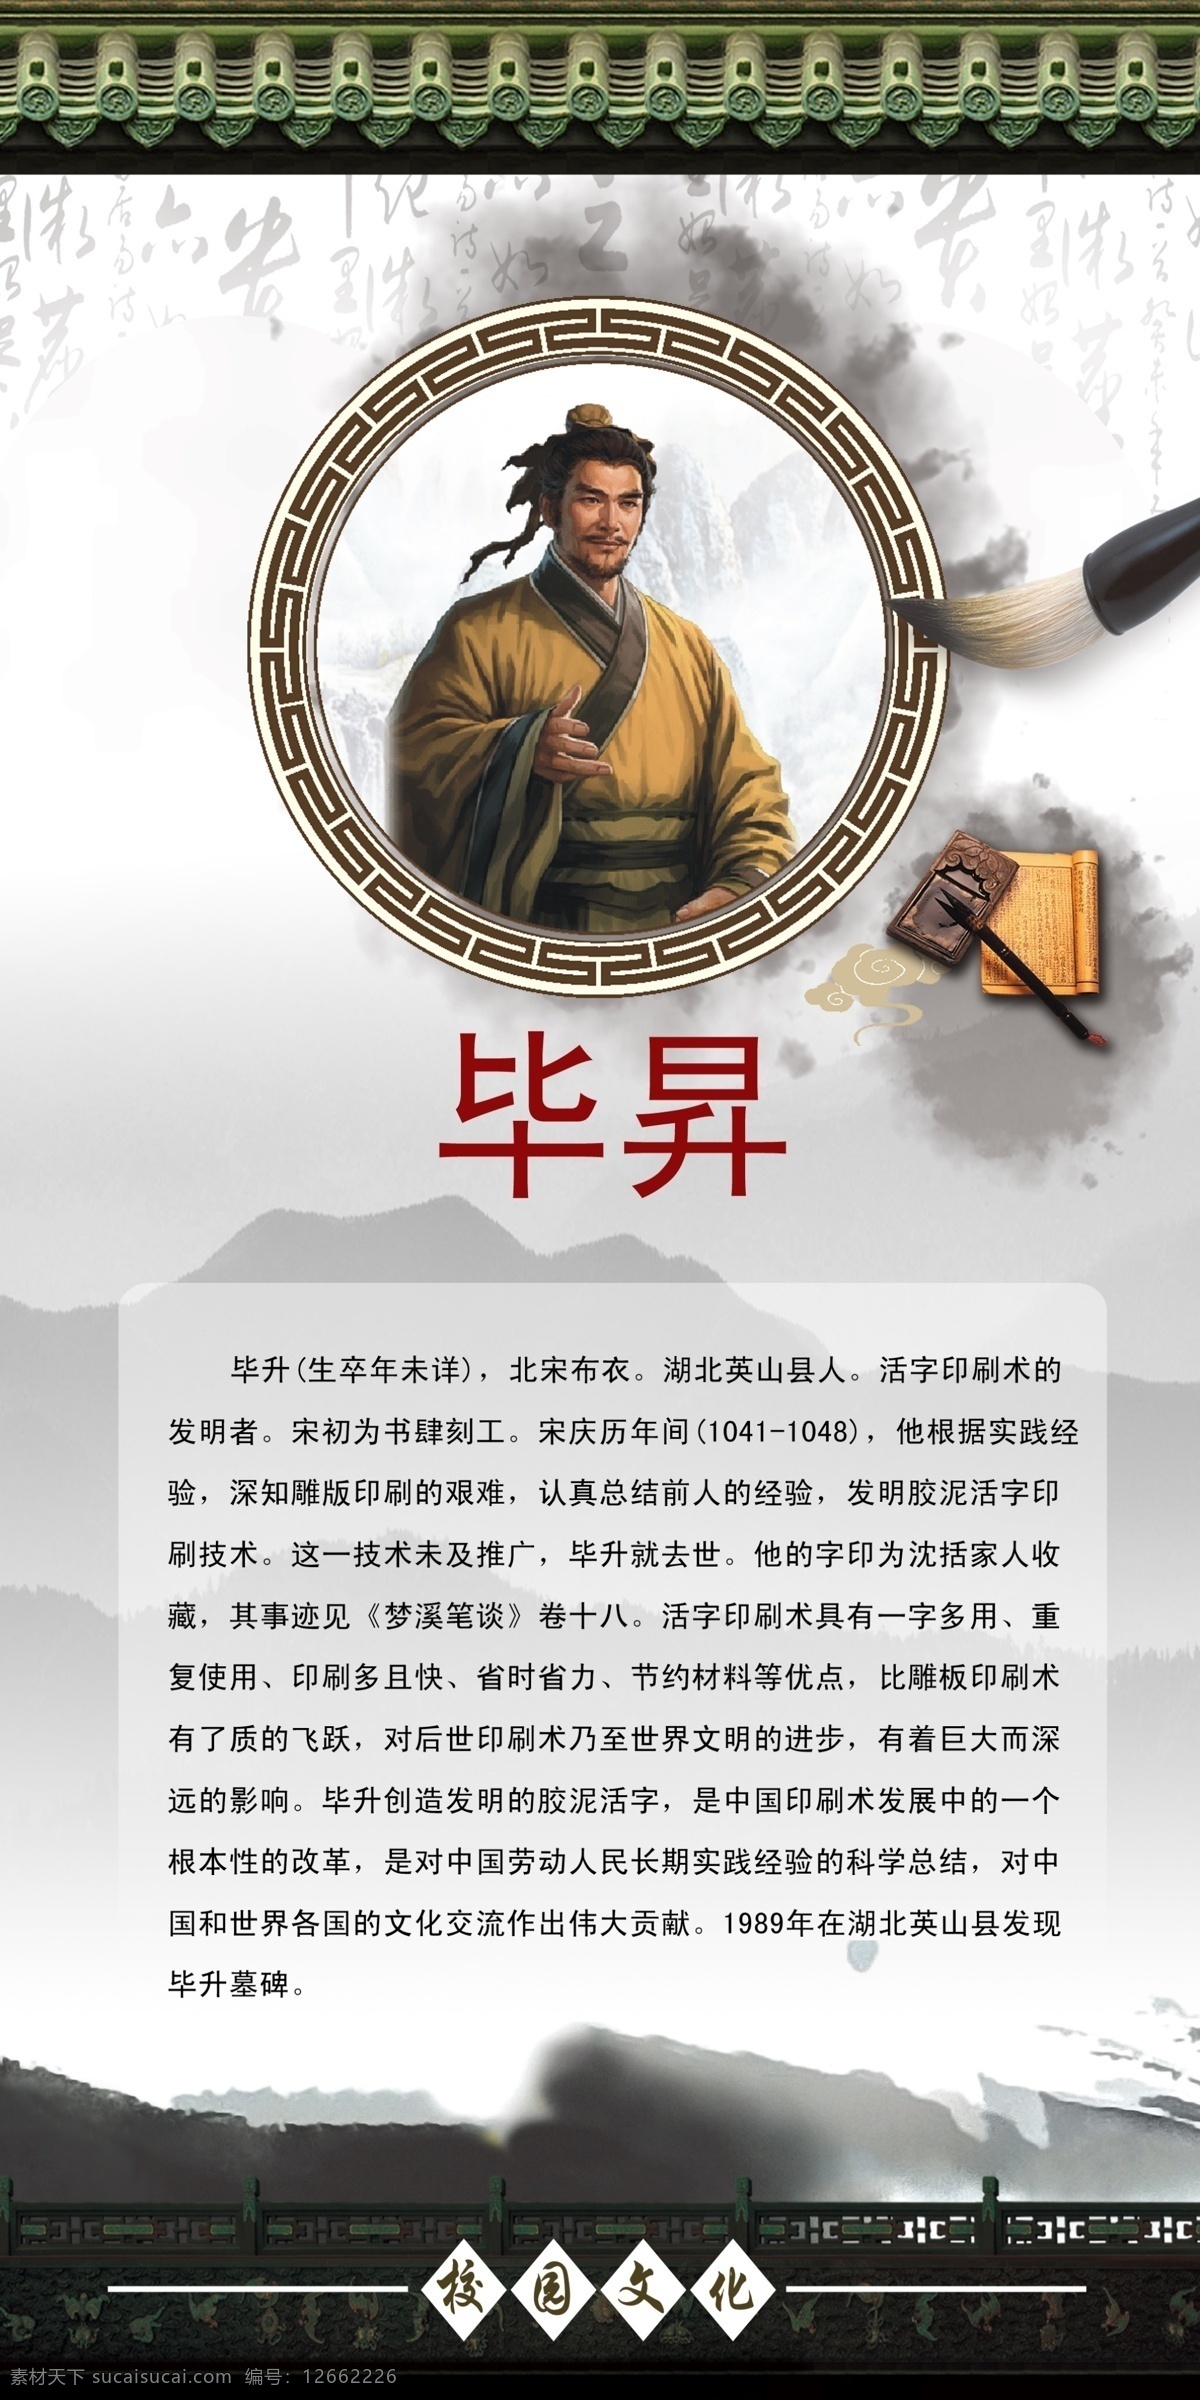 历史文化 名 仁 毕 昇 古代名人 名人名言 历史人物 文学家 科学家 历史学家 历史名人 毕昇